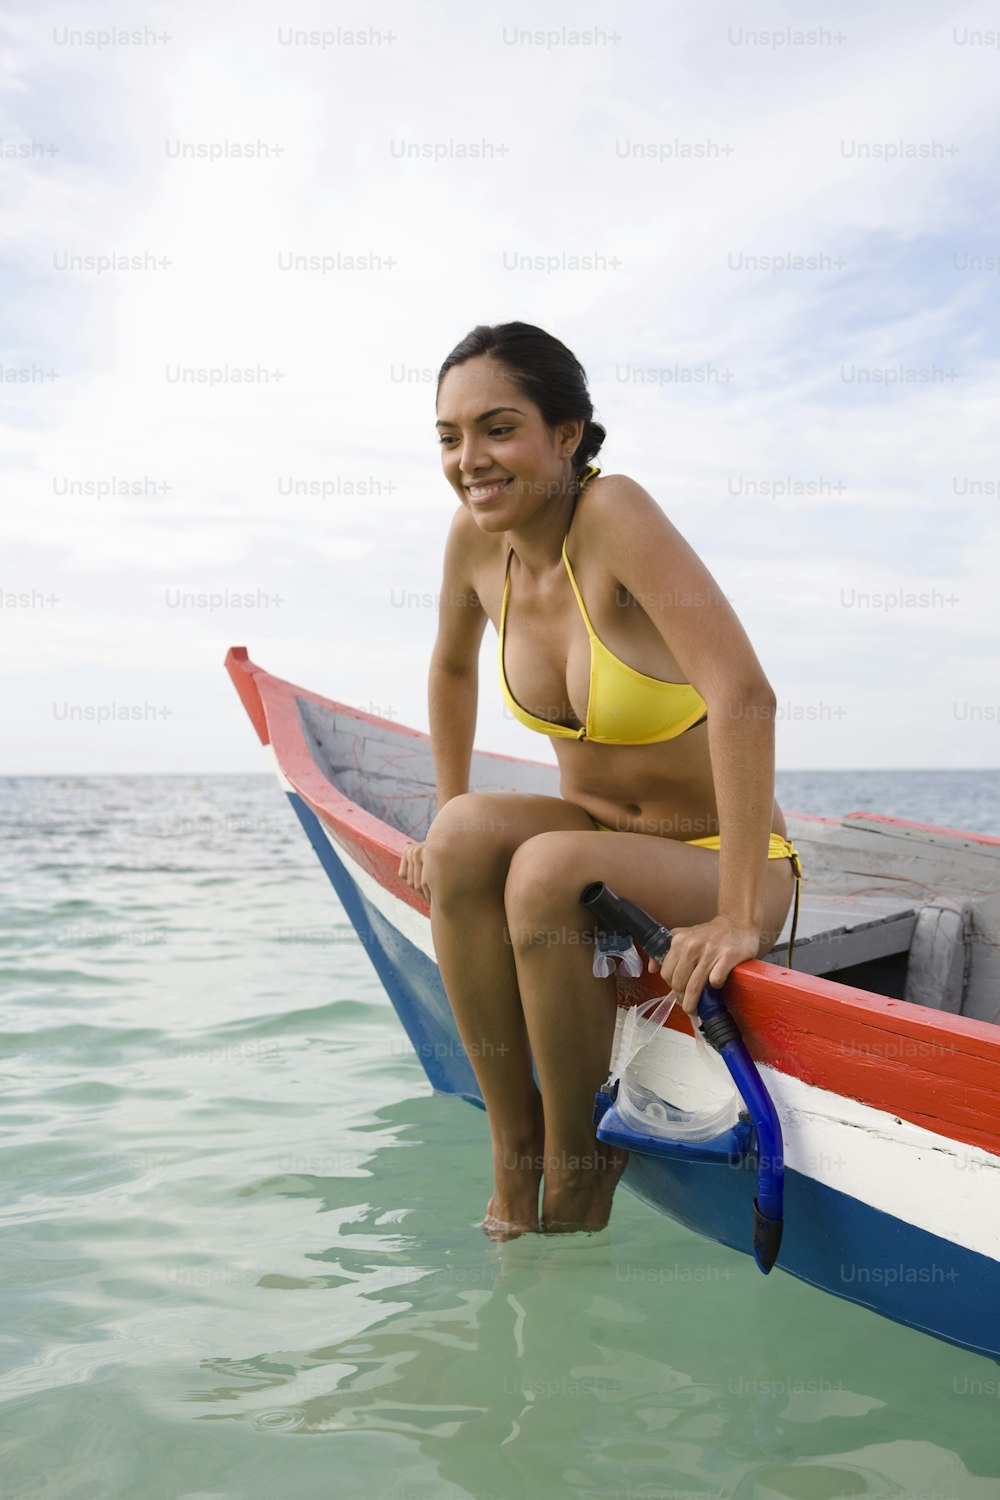 Eine Frau in einem gelben Bikini sitzt auf einem Boot